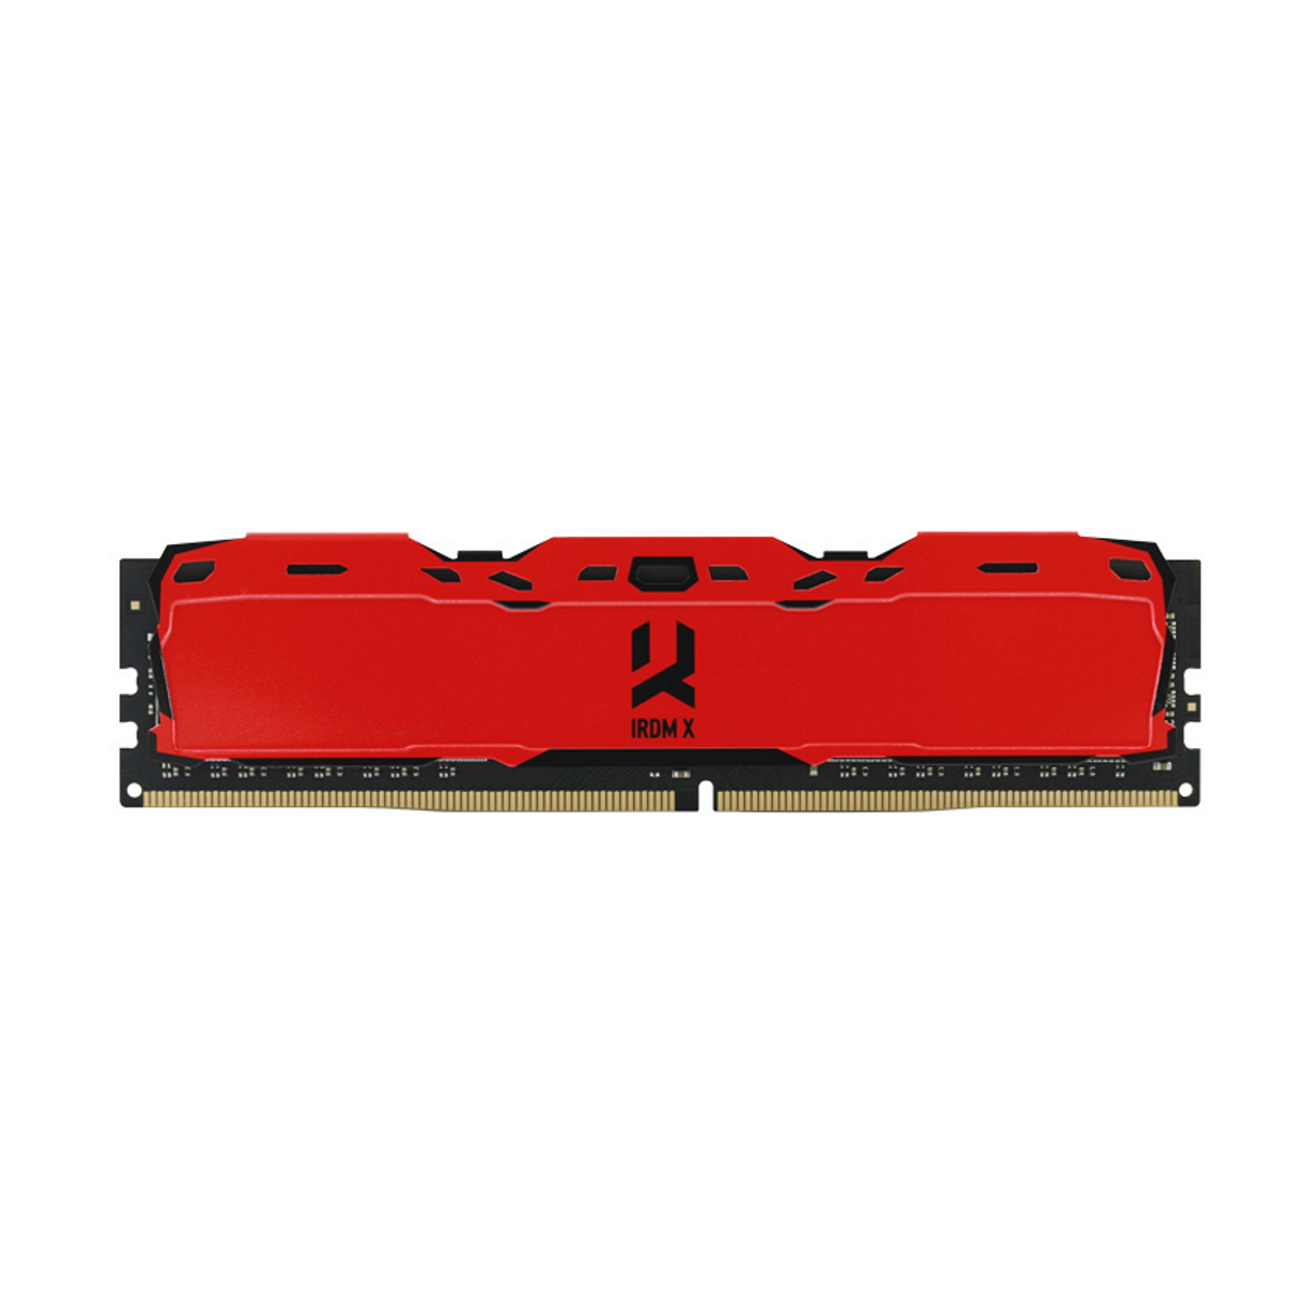 GOODRAM 8GB 3000MHz CL16 DDR4 8 DIMM GB SR Arbeitsspeicher RED